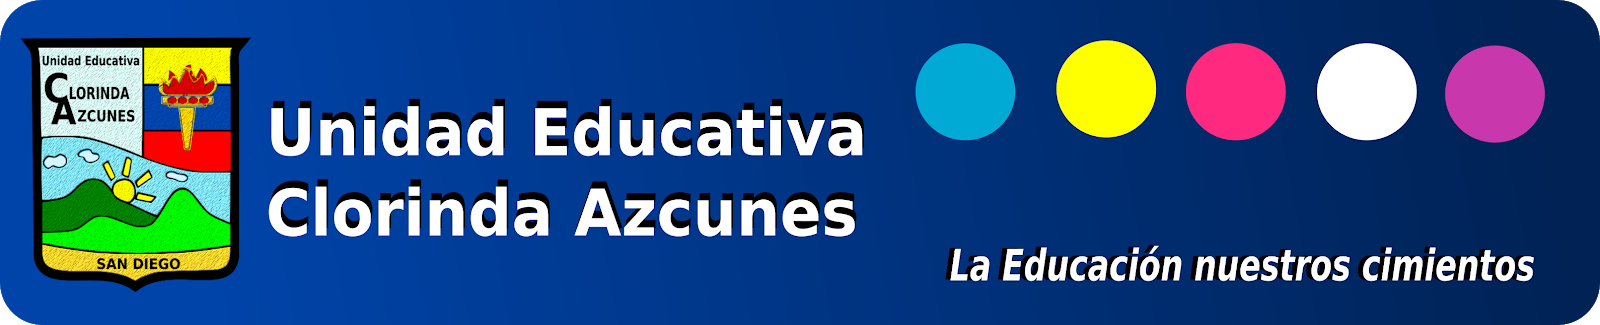 Unidad Educativa Clorinda Azcunes